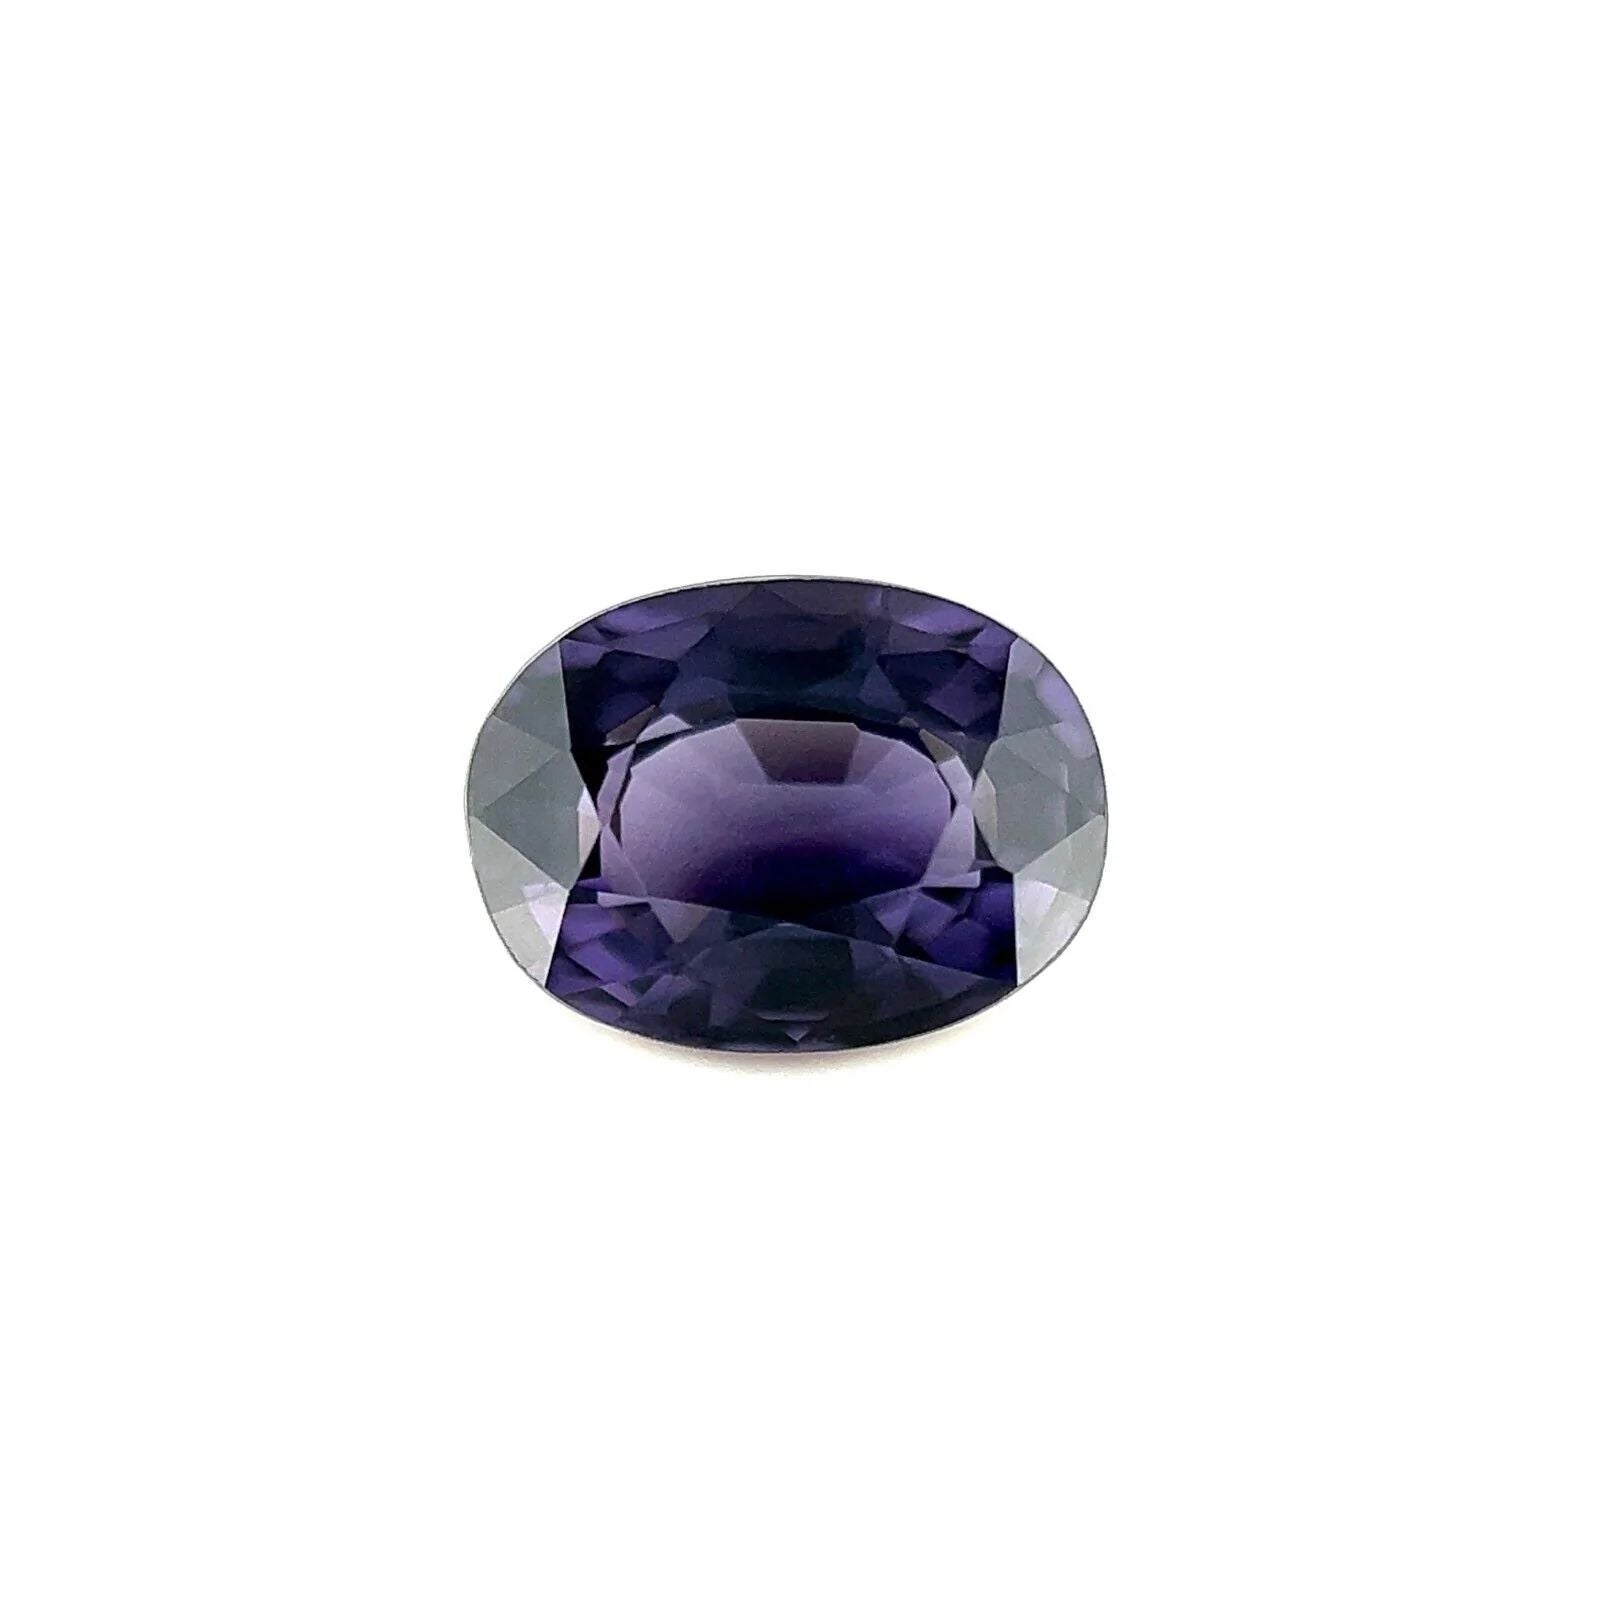 Spinelle violet profond 2,03 carats, taille ovale naturelle, 8,5 x6.3 mm, pierre précieuse non sertie VS